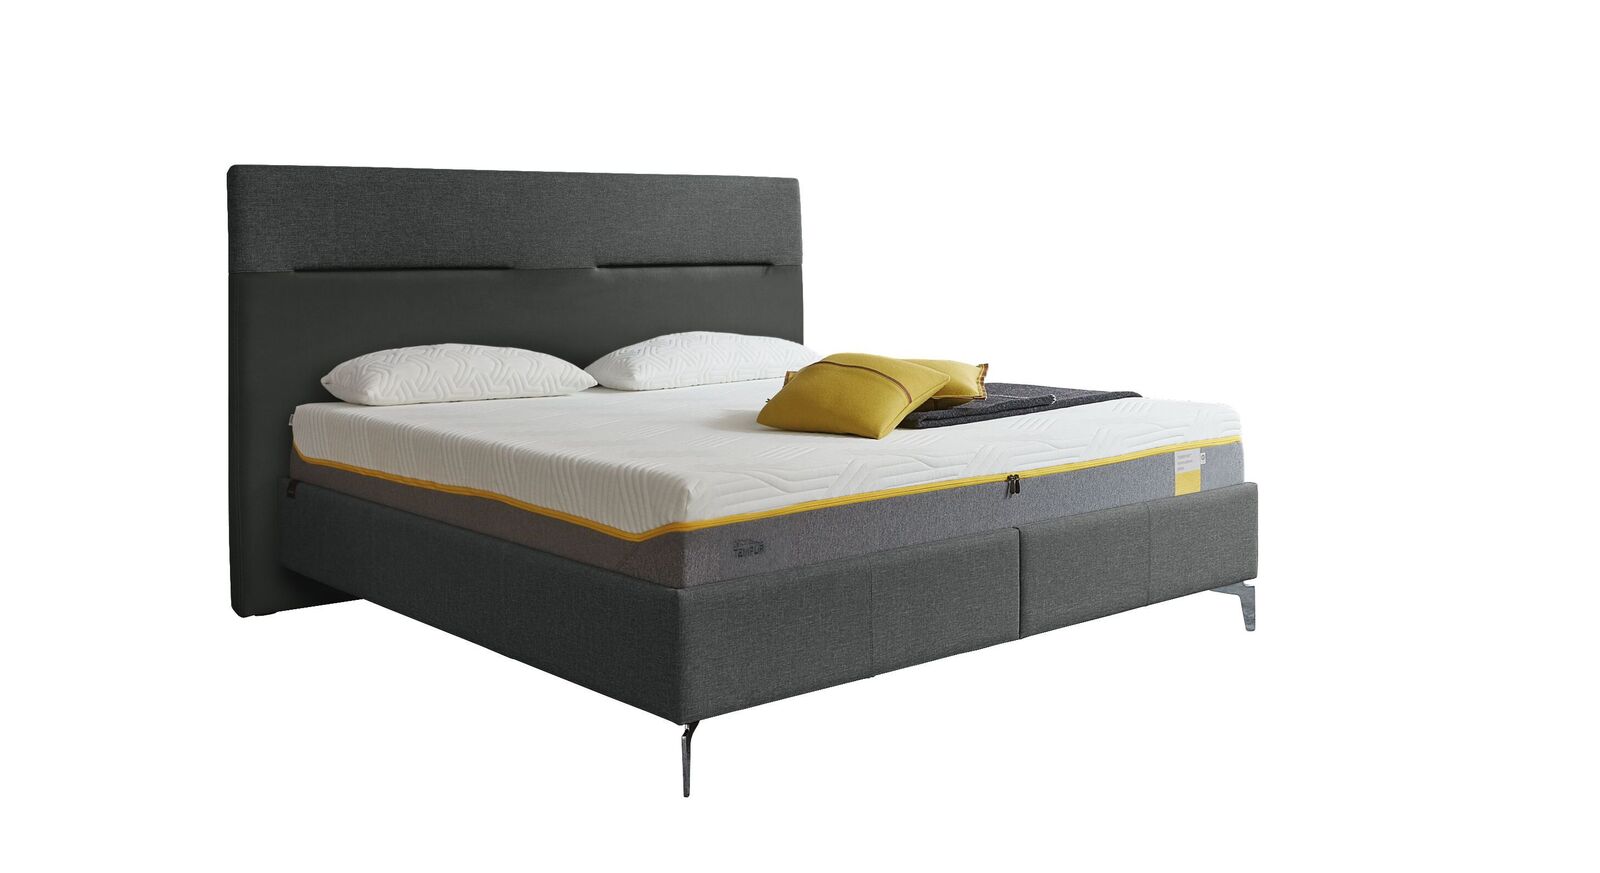 TEMPUR Bett Relax Texture mit Bezug in Webstoff und Kunstleder in Anthrazit